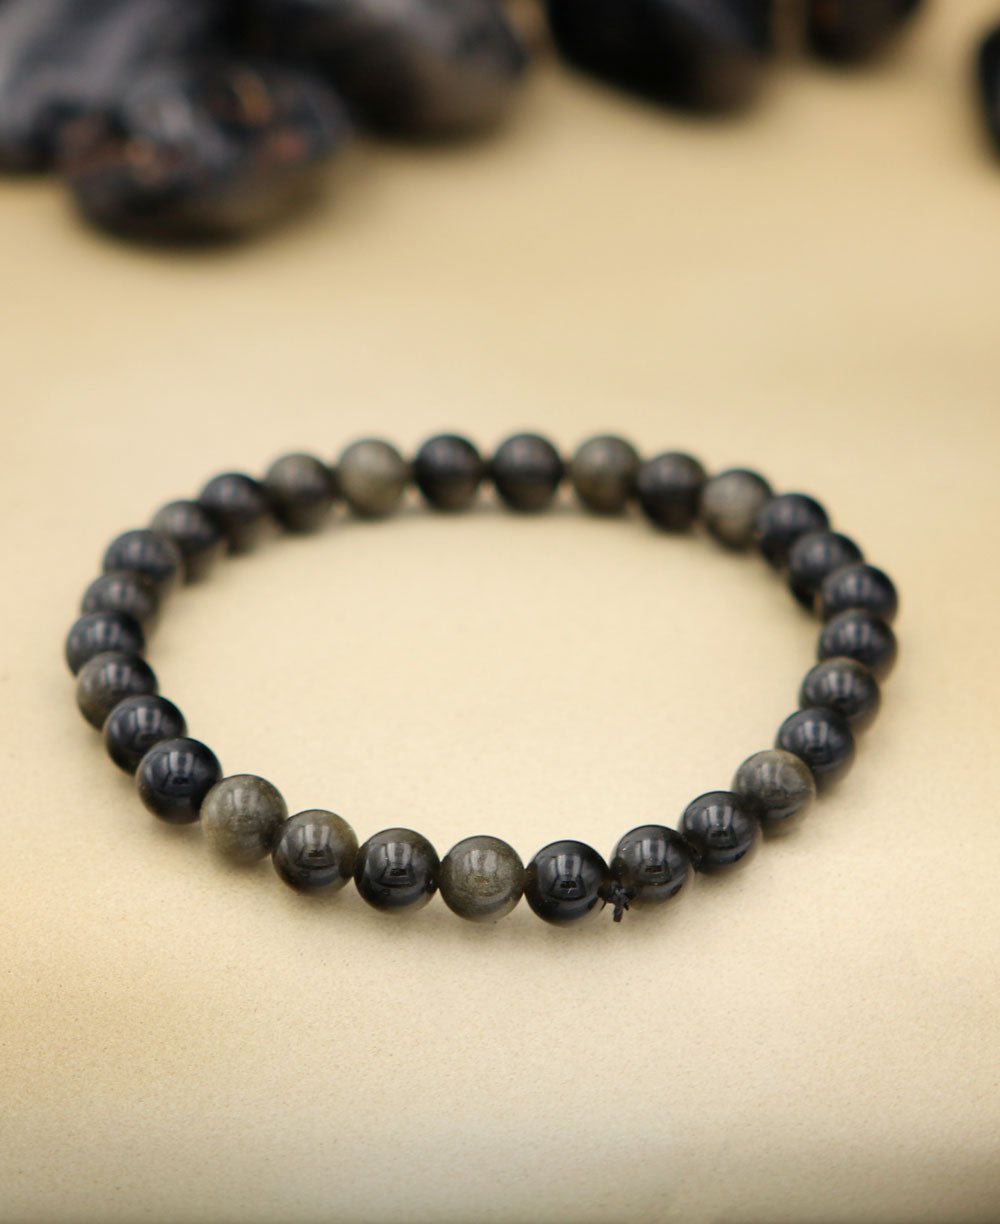 Obsidian Gemstone Bead Bracelet - 6mm